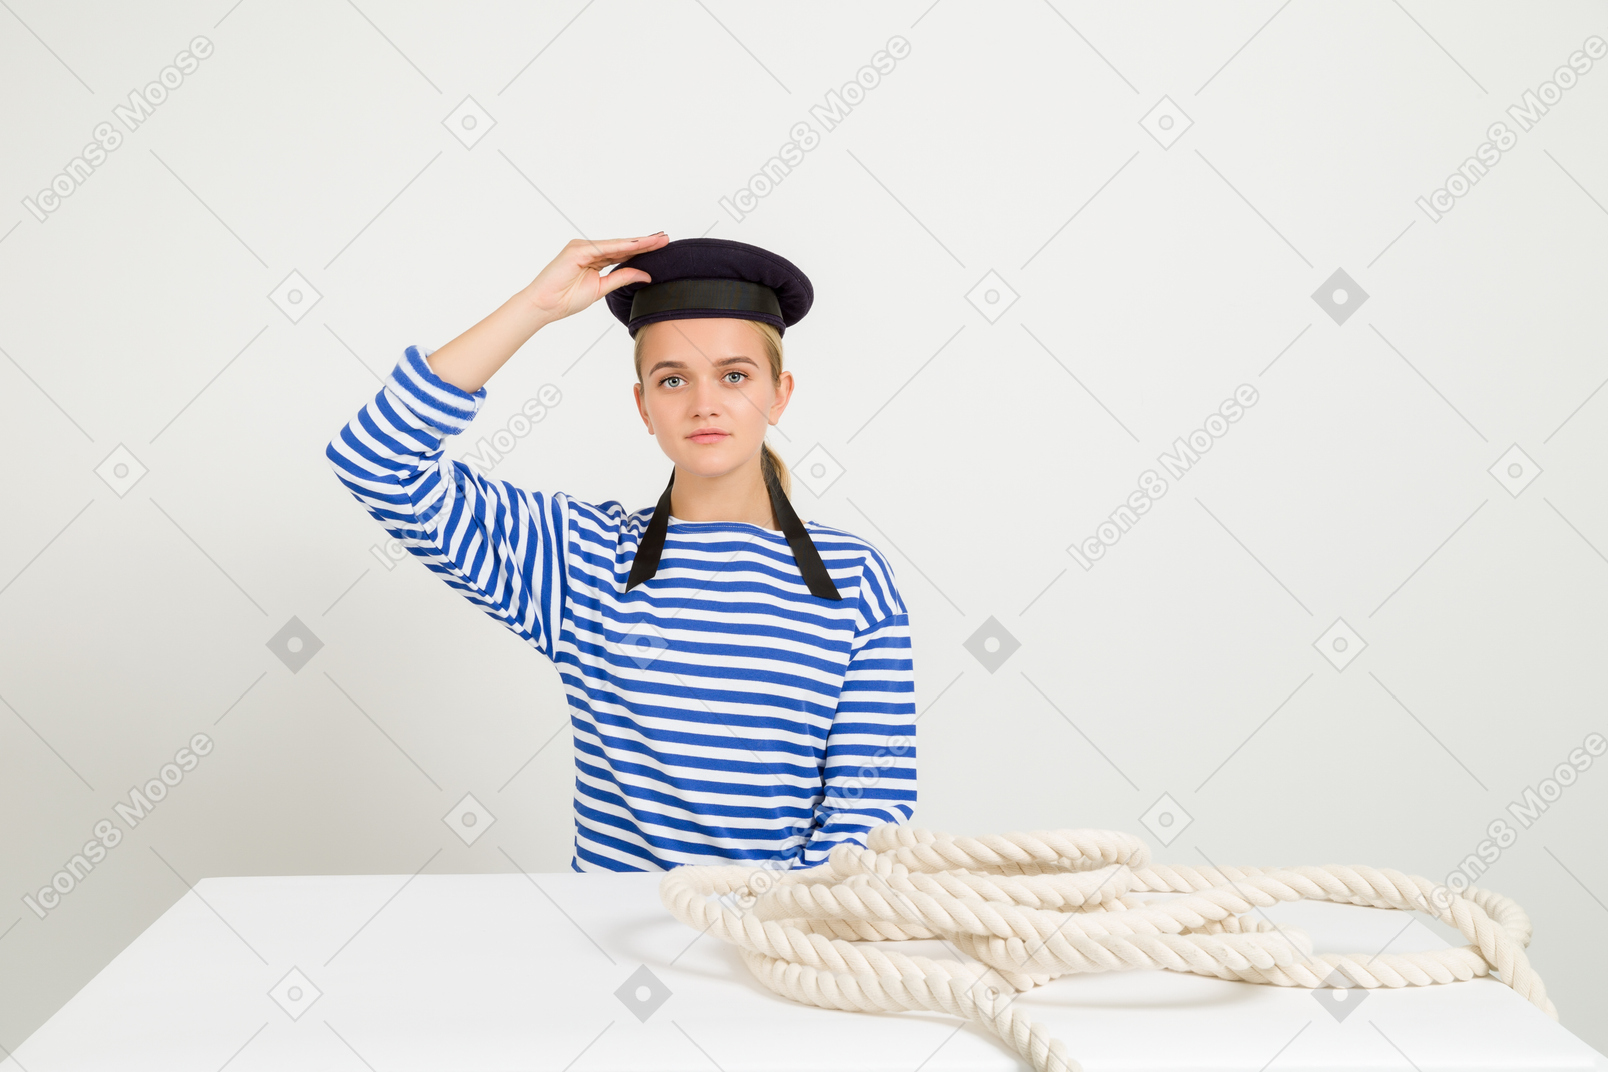 Матроска сидит за столом с морской веревкой на нем и держит шапку